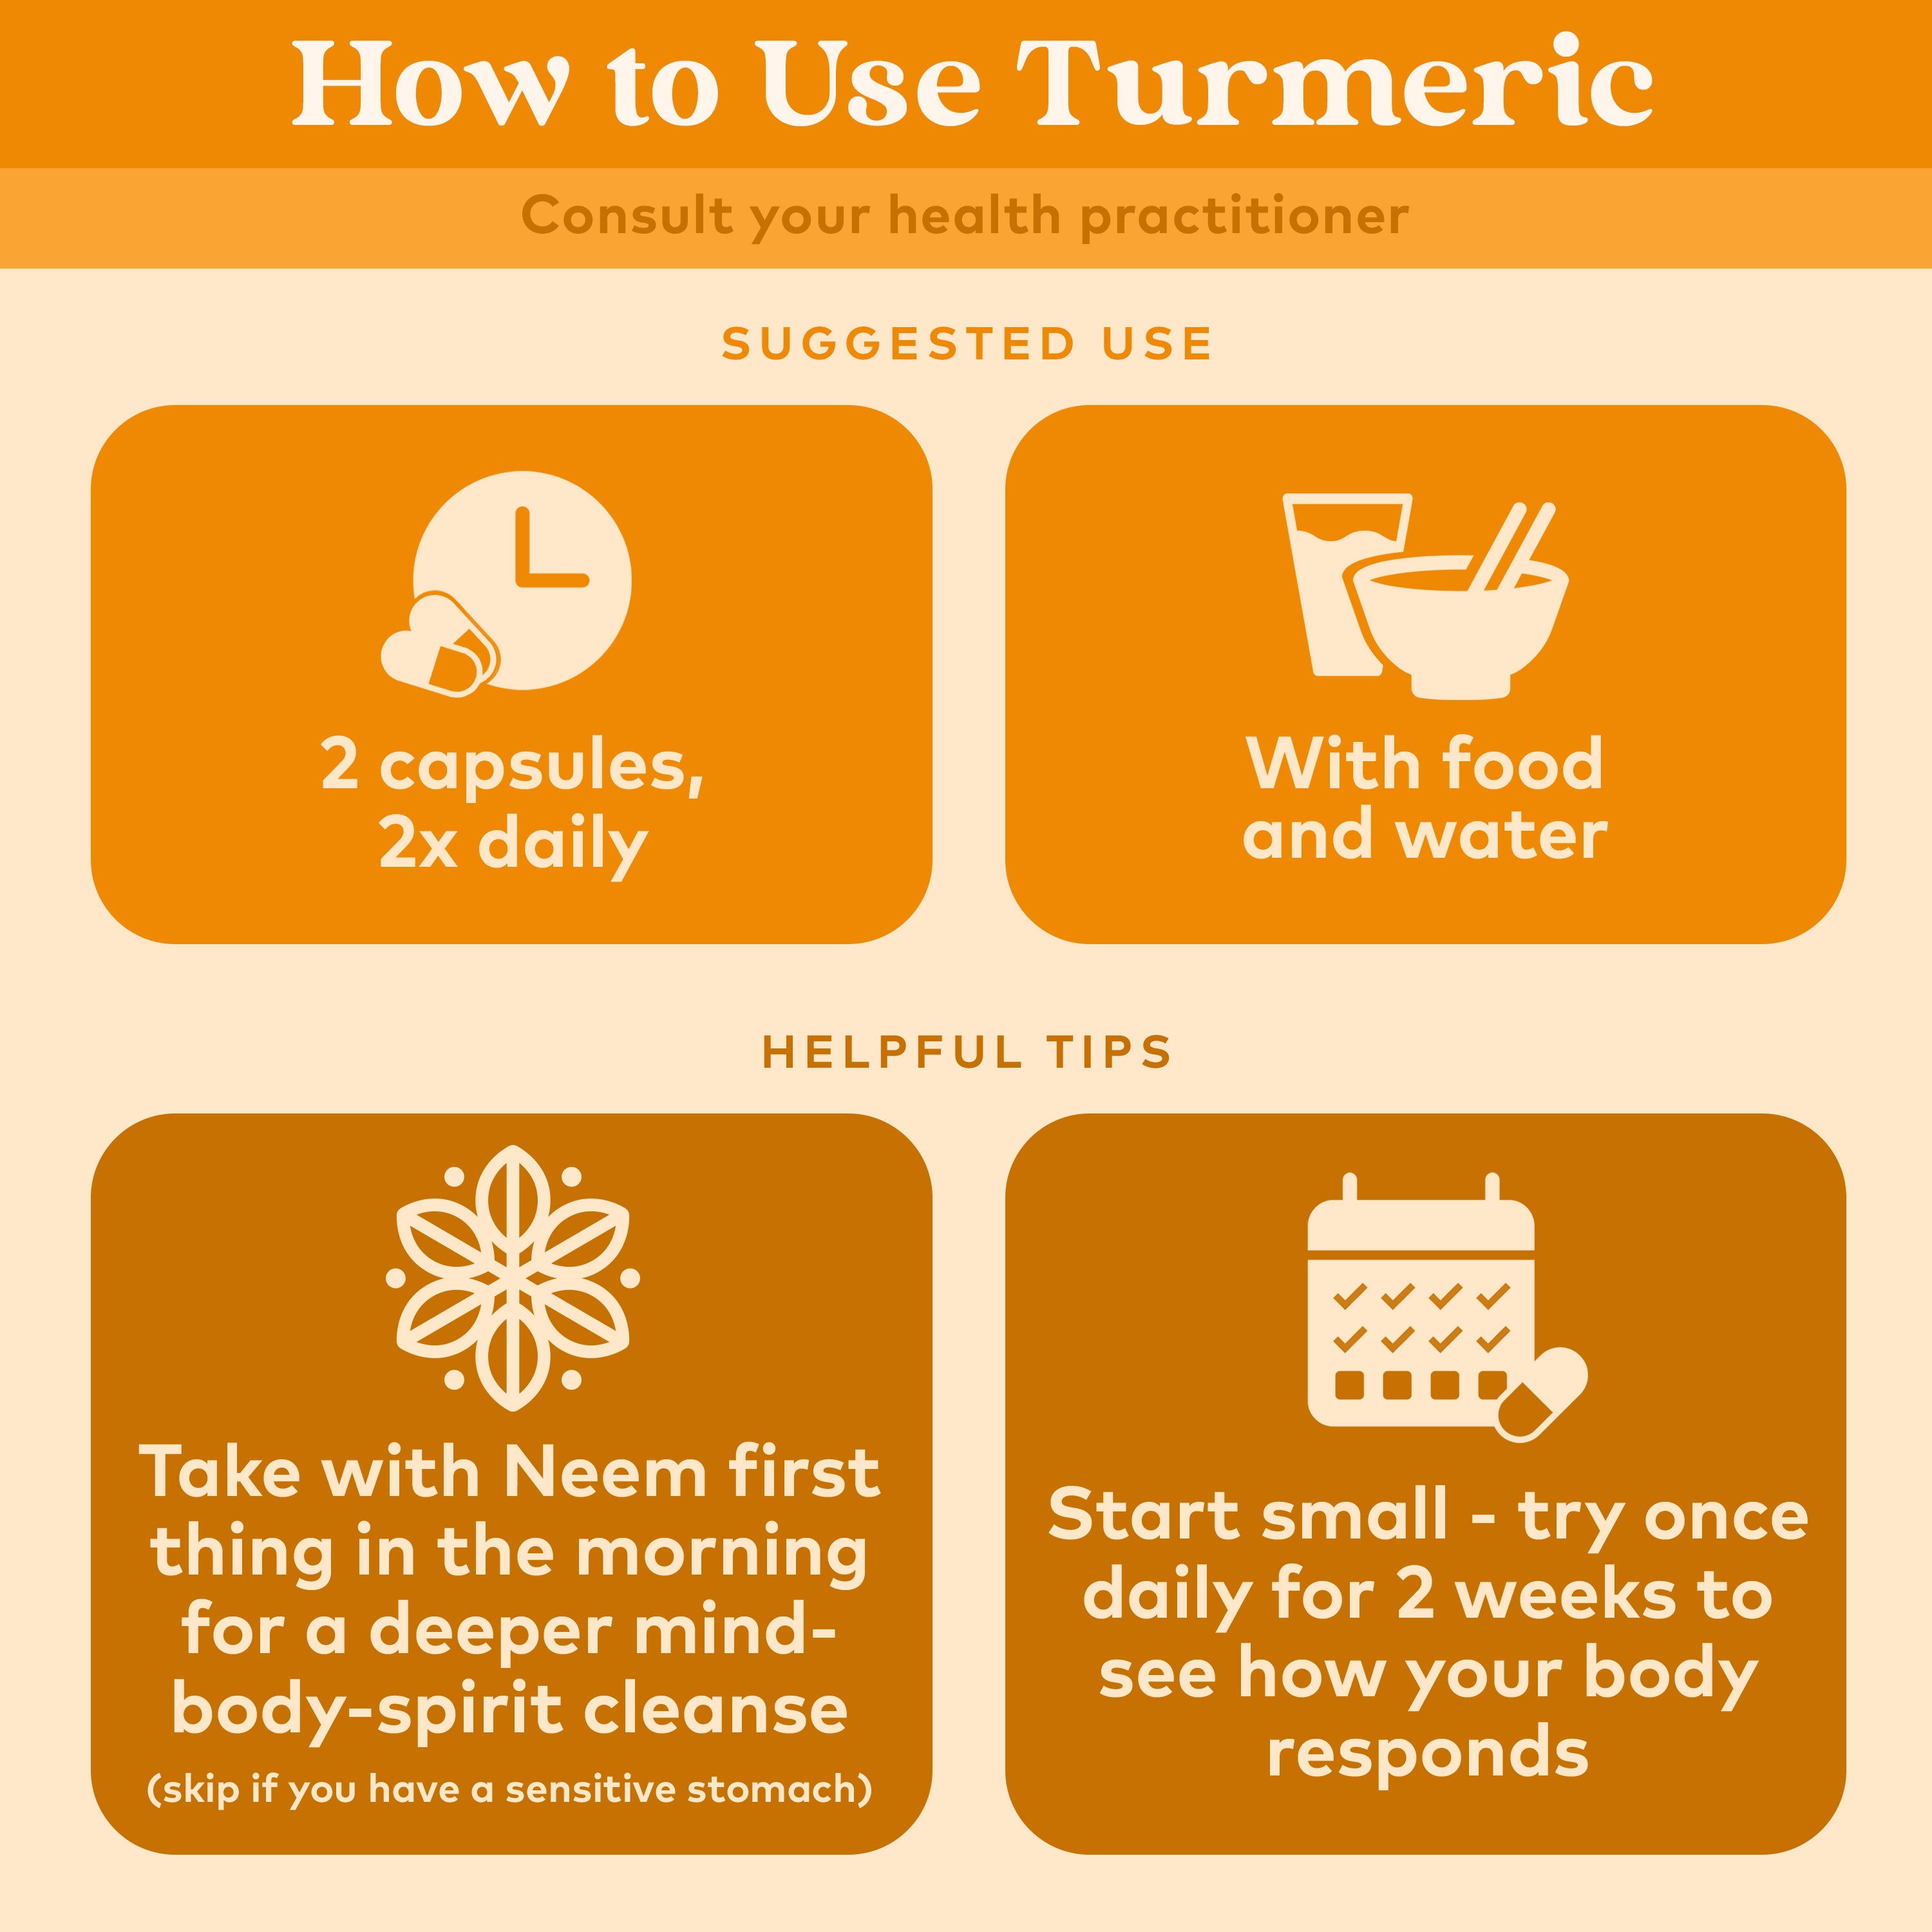 Turmeric Formula